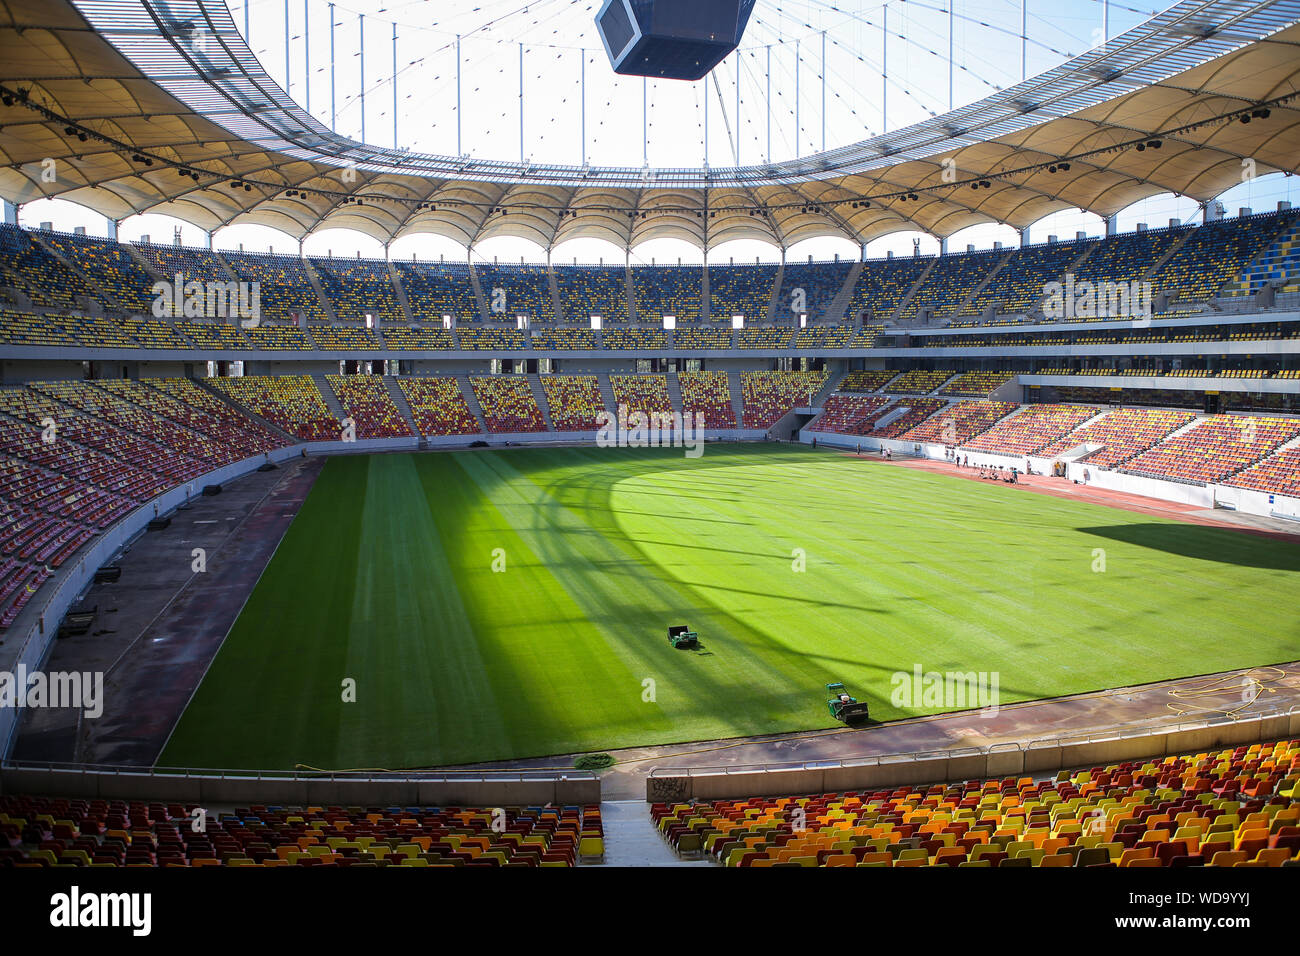 Bucarest, Romania - 29 agosto 2019: Panoramica del National Arena Stadium di Bucarest in una giornata di sole. Foto Stock